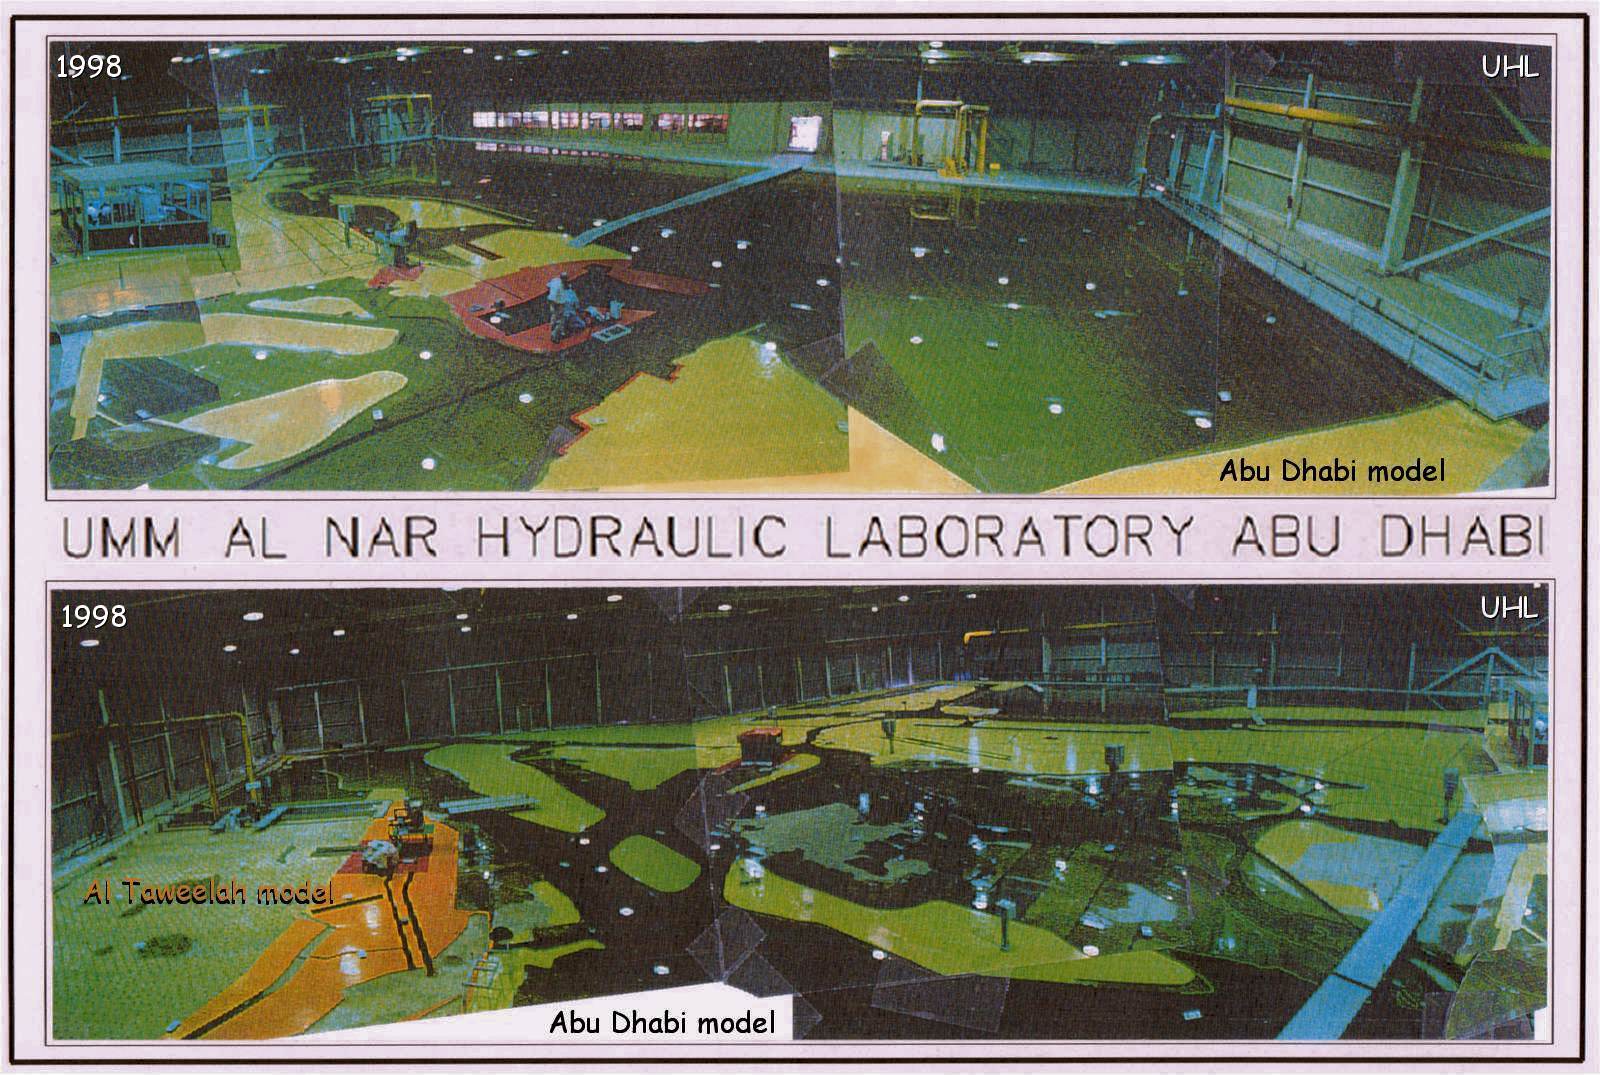 Umm al Nar Hydraulic Laboratory - image via WL|Delft Hydraulics